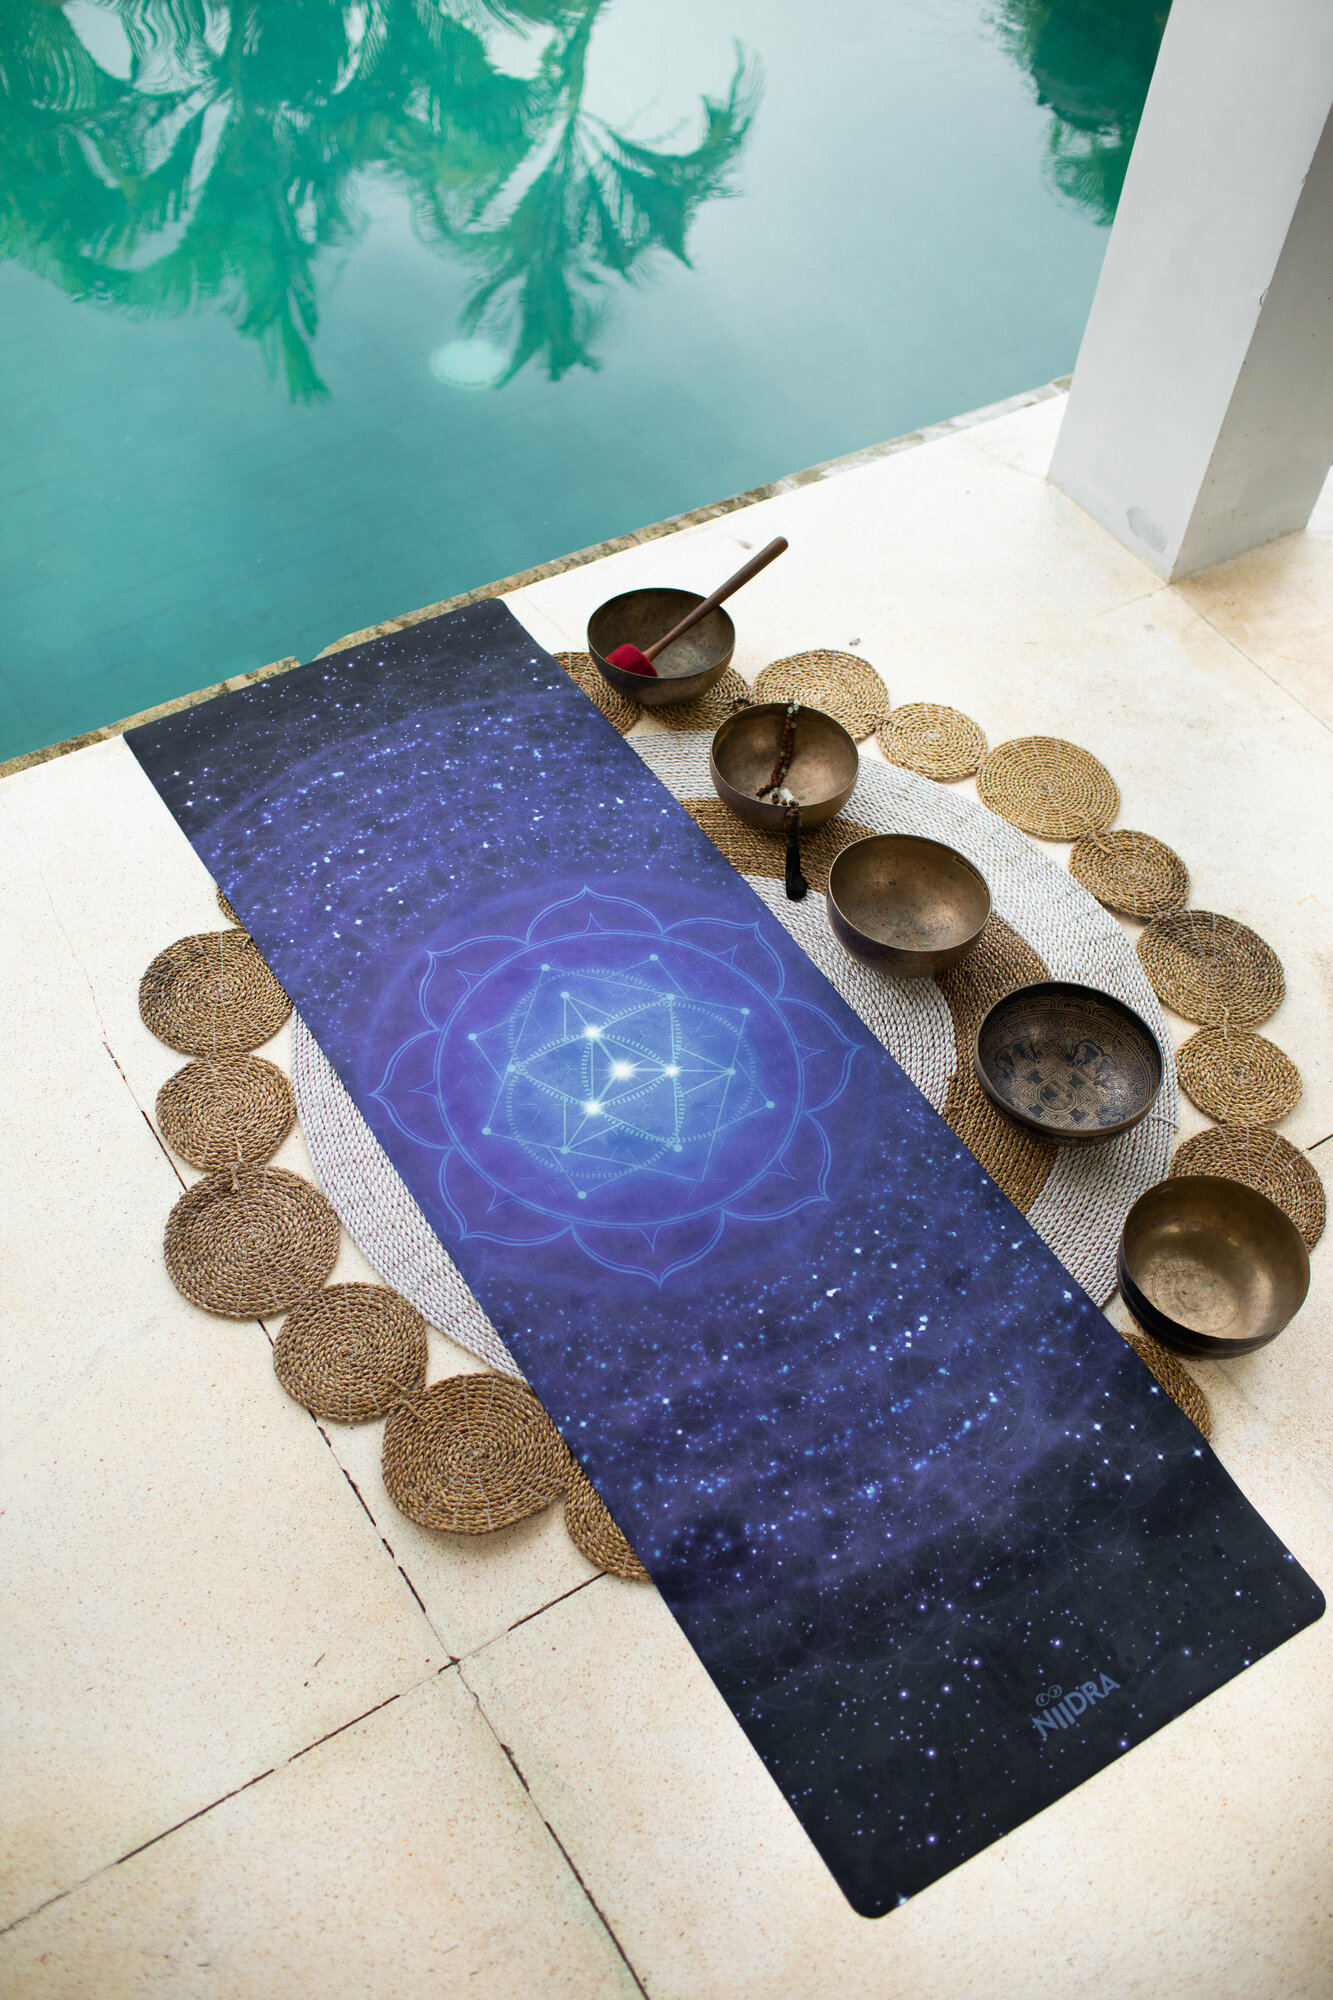 Коврик для йоги NiiDRA, модель - Мандала Создания, толщина 1 мм, размер 61*183 см, материалы микрофибра + каучук, подарок с каждым заказом